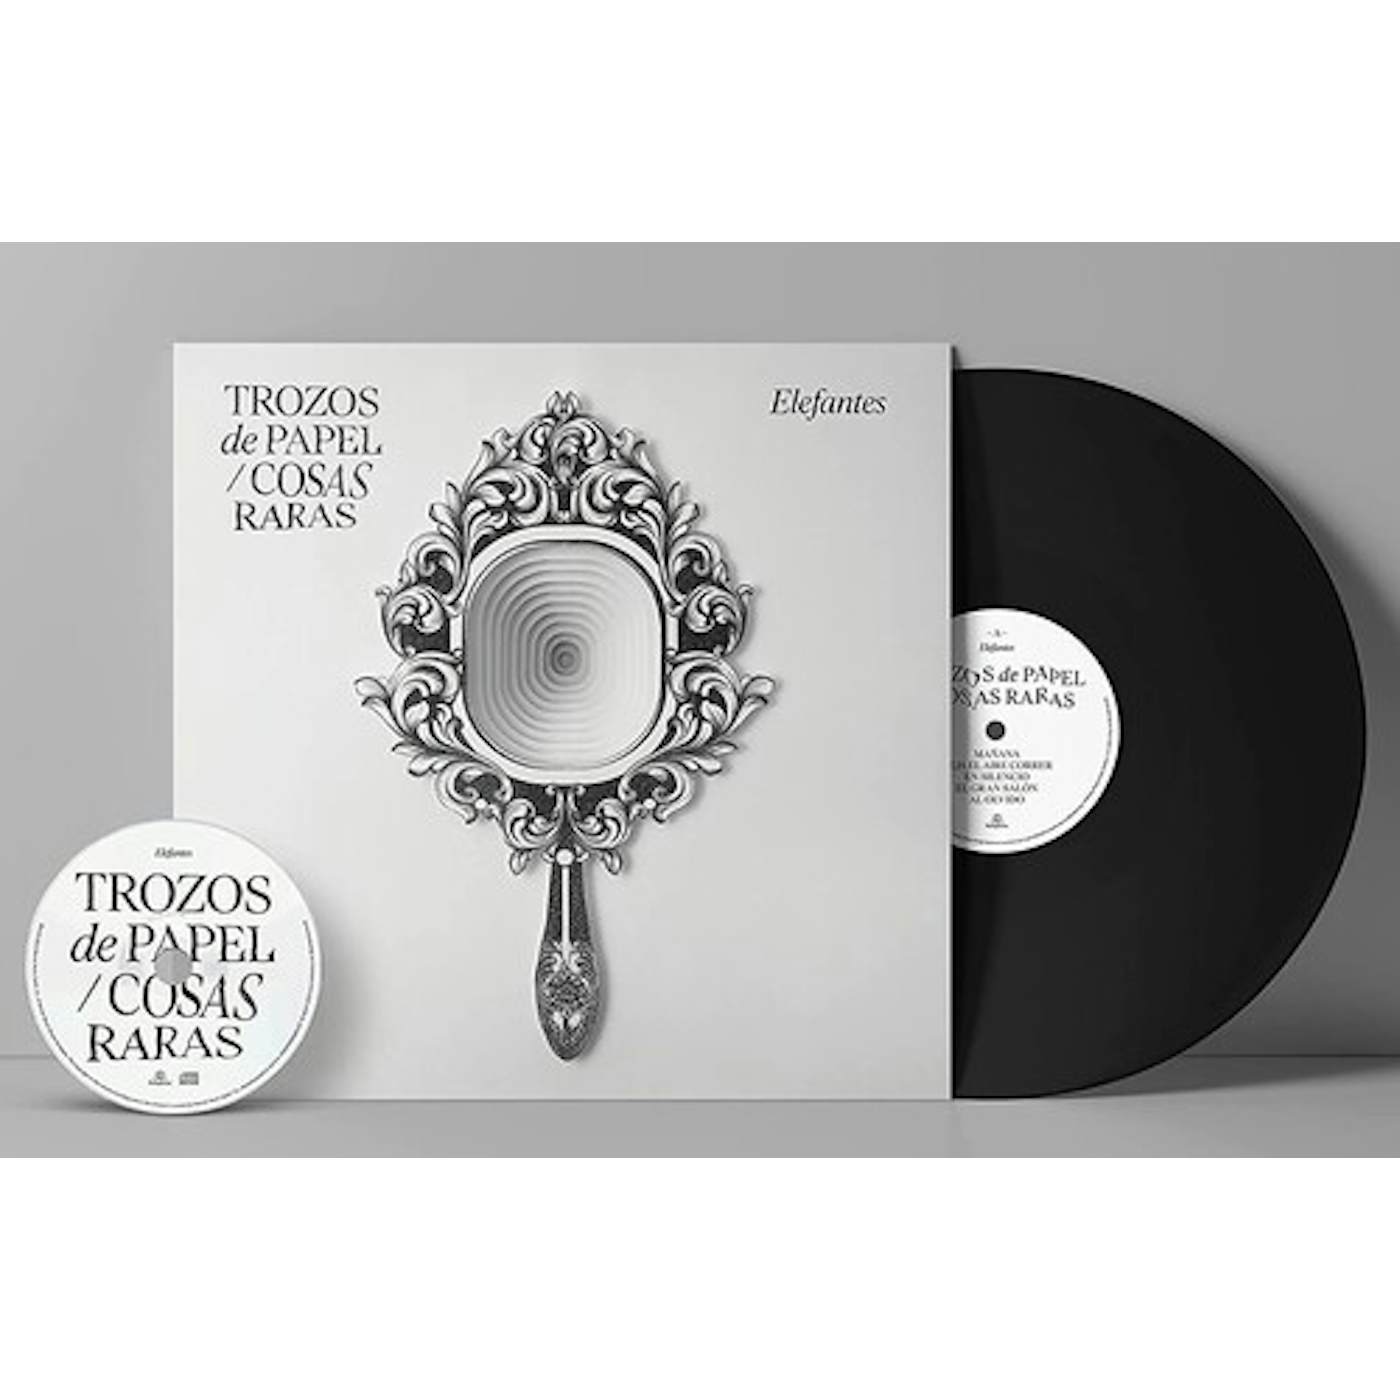 Elefantes TROZOS de PAPEL / COSAS RARAS Vinyl Record